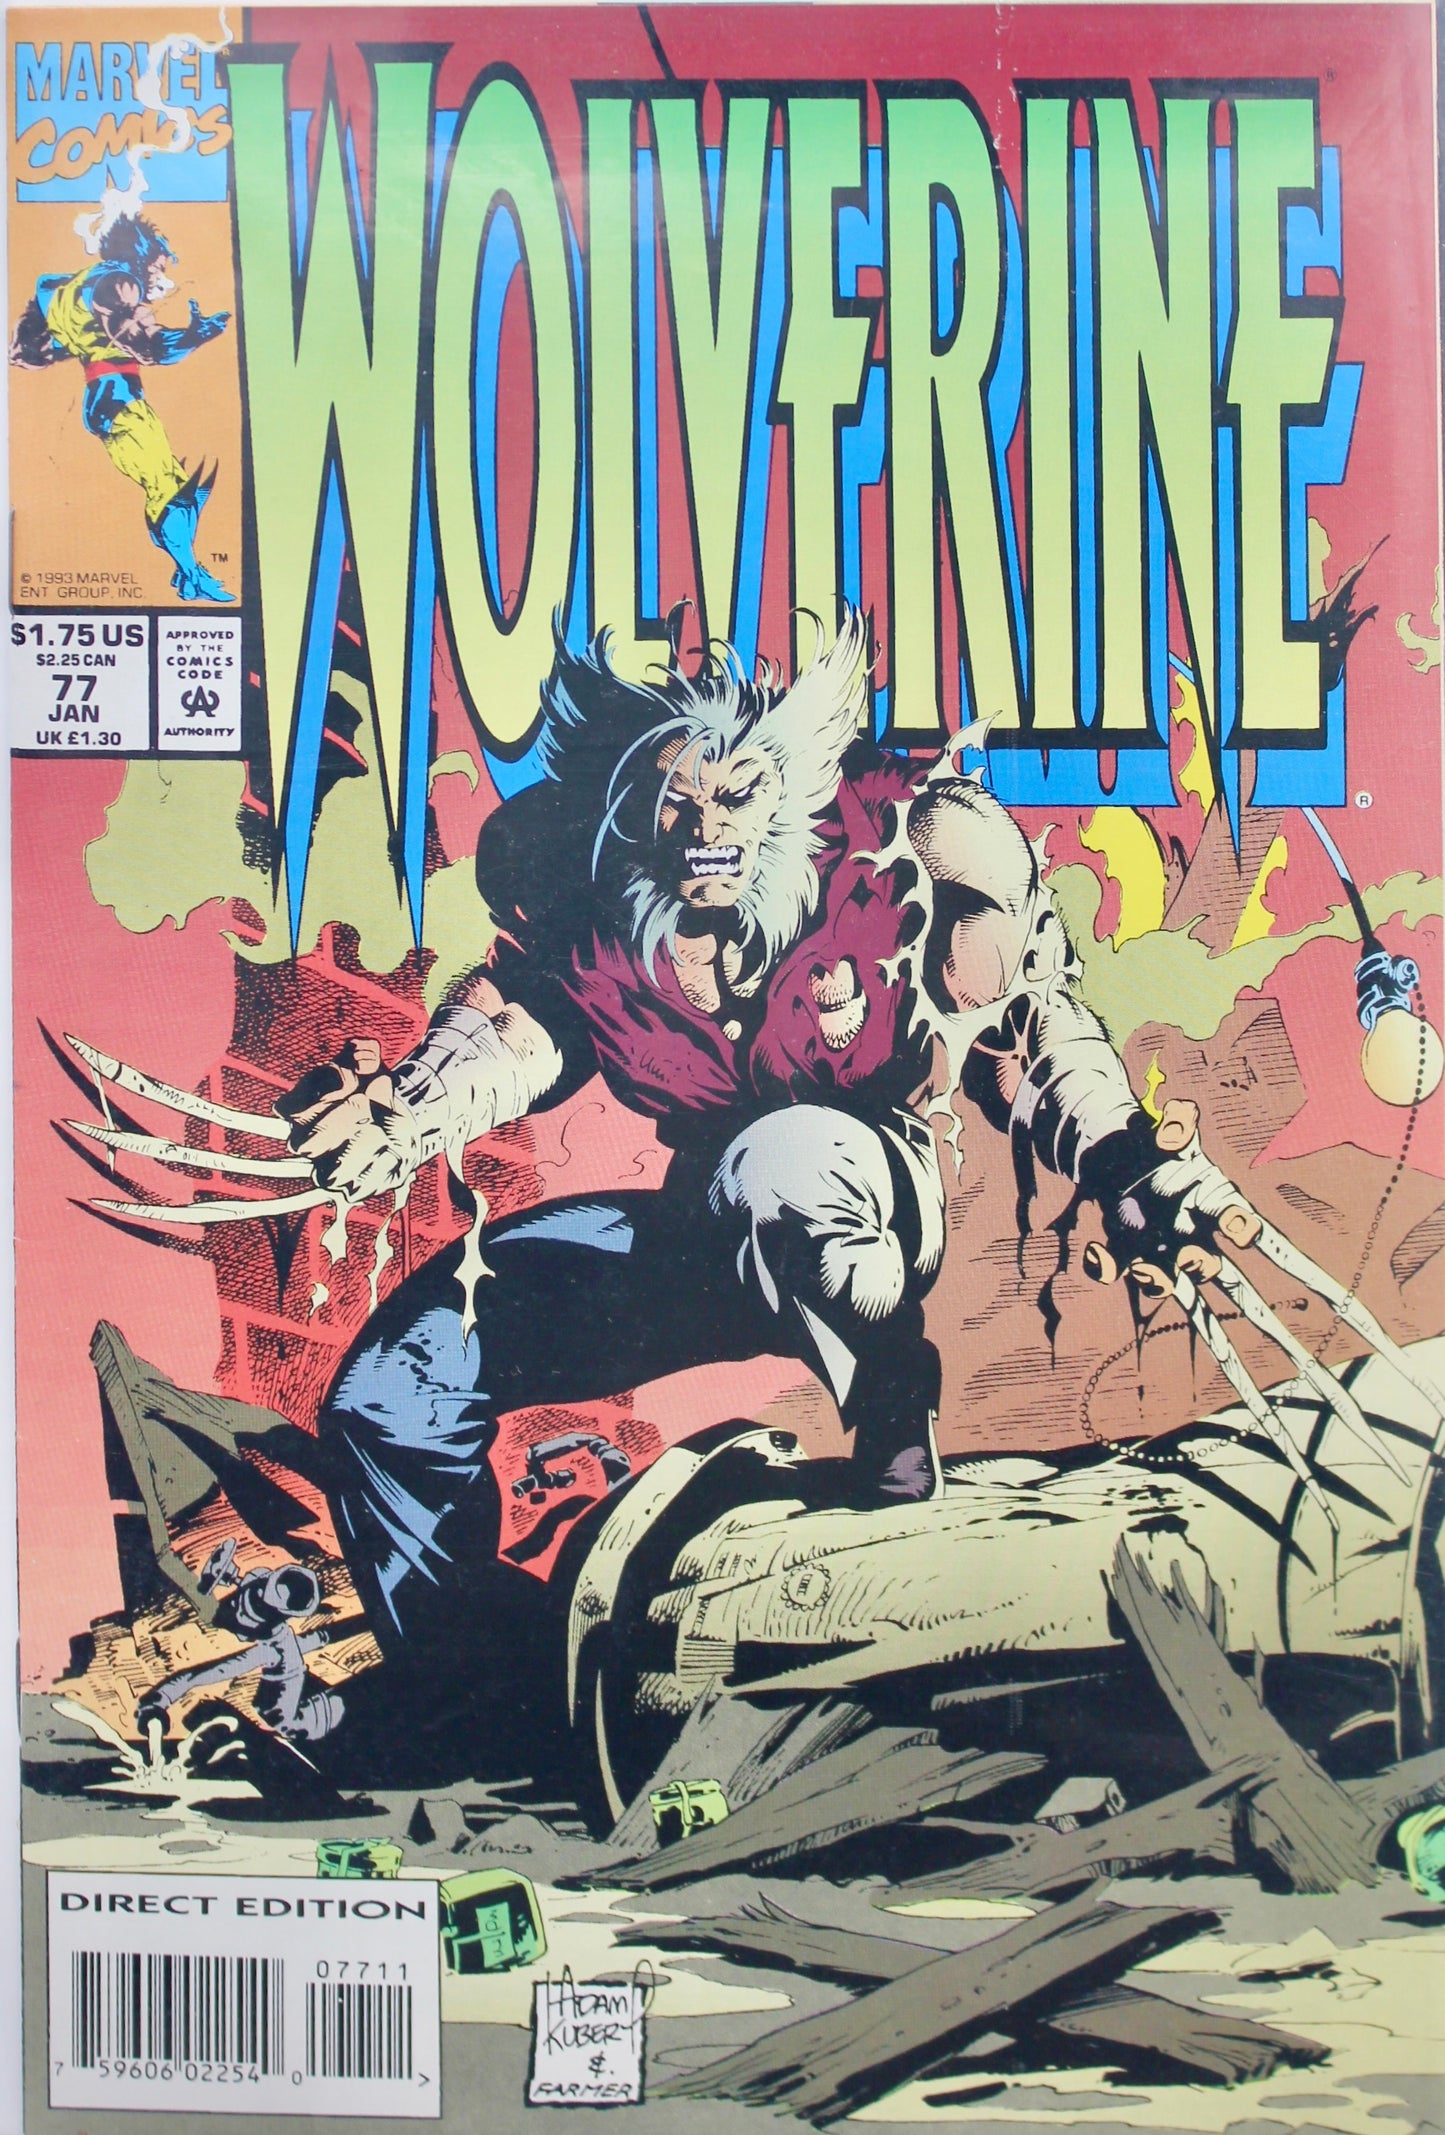 Wolverine #77